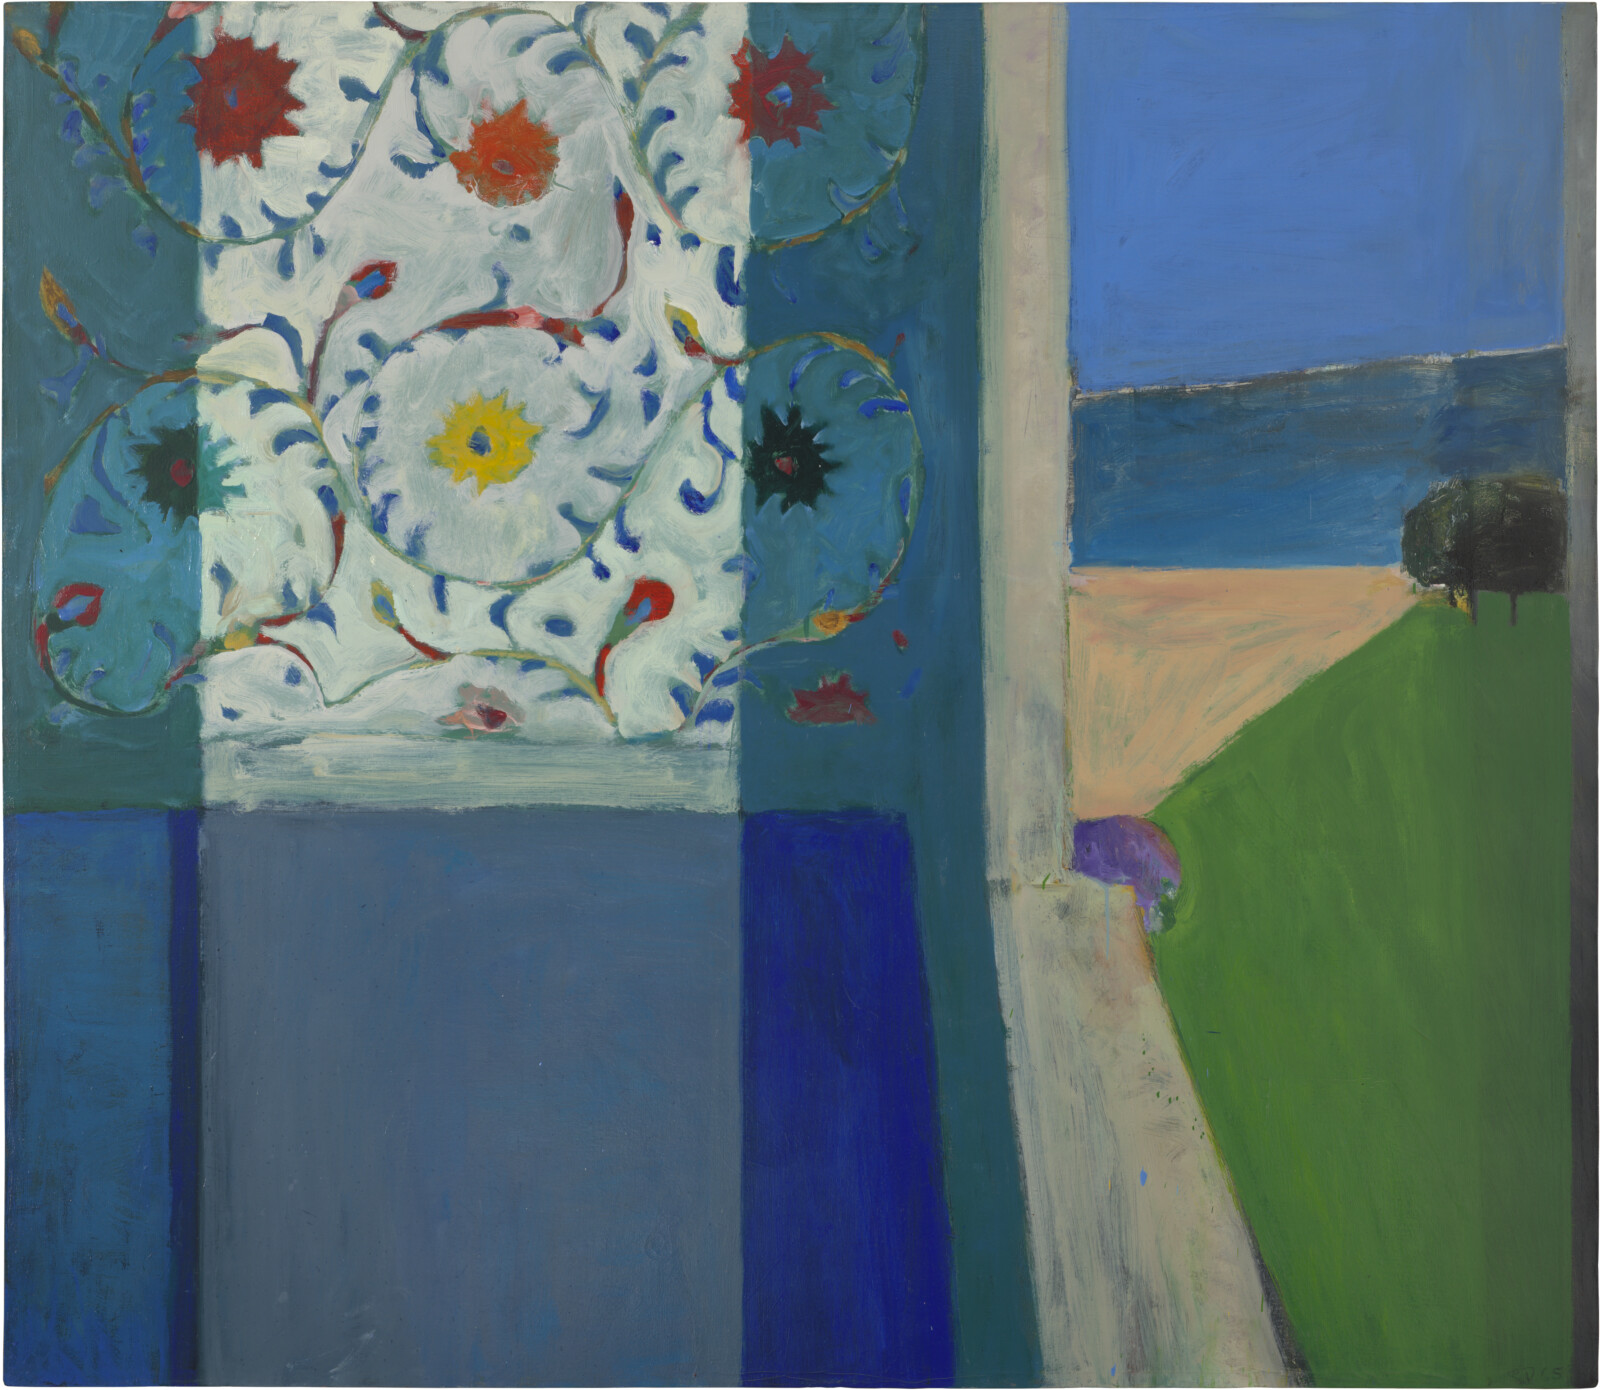 Richard Diebenkorn: Paintings and Drawings, 1943–1976